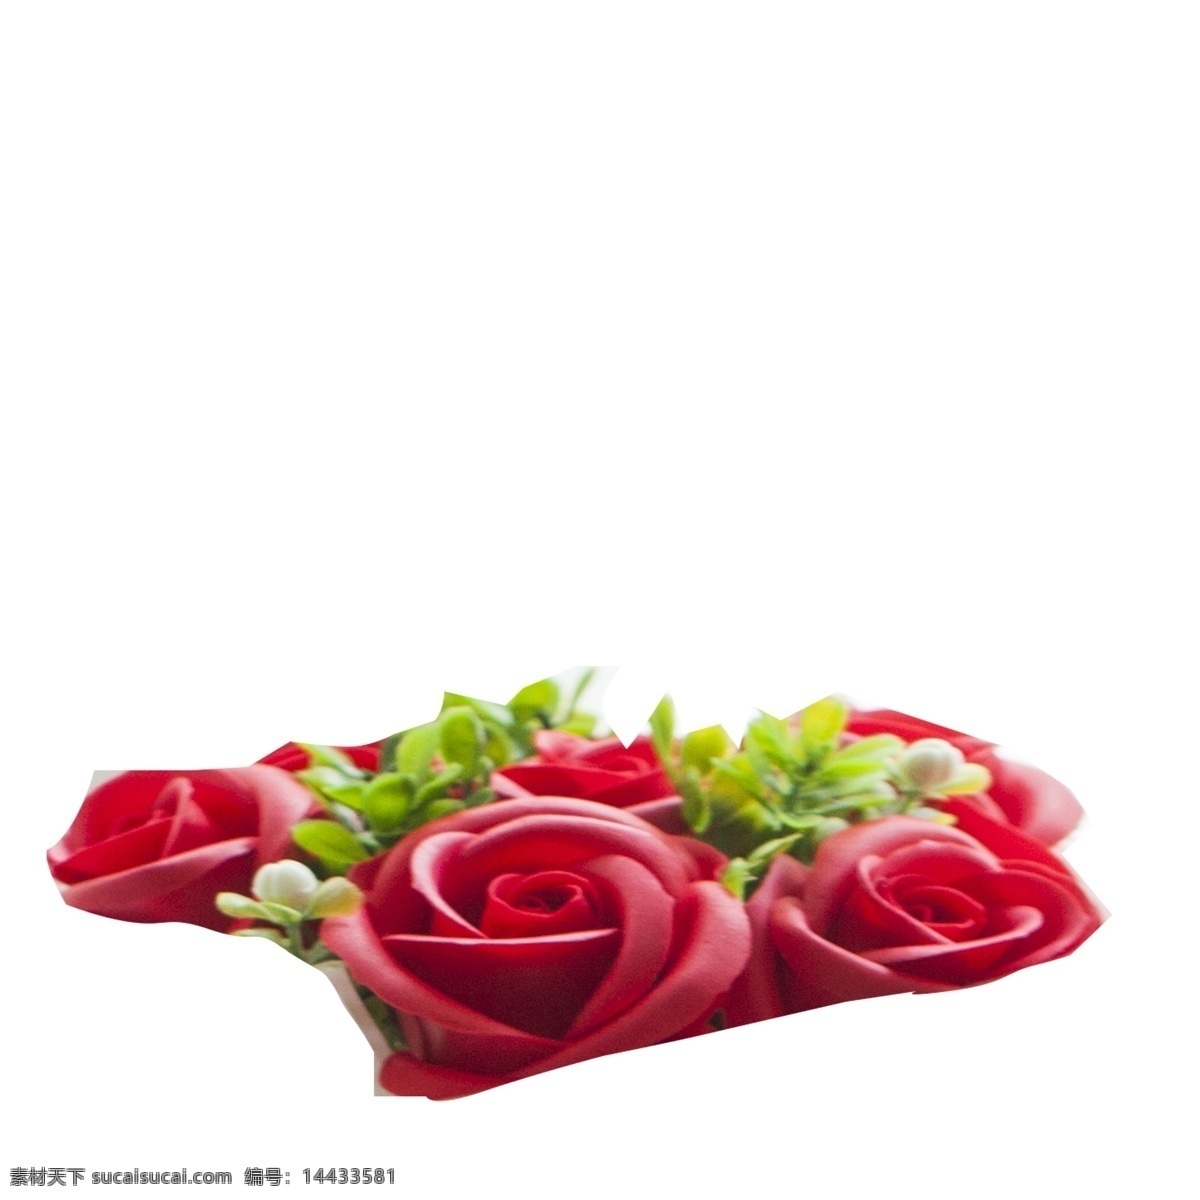 红色 玫瑰 花朵 免 抠 图 玫瑰花朵 绿叶子 时尚礼盒 漂亮的花朵 情人节 礼物 时尚花艺 红色的花朵 免抠图